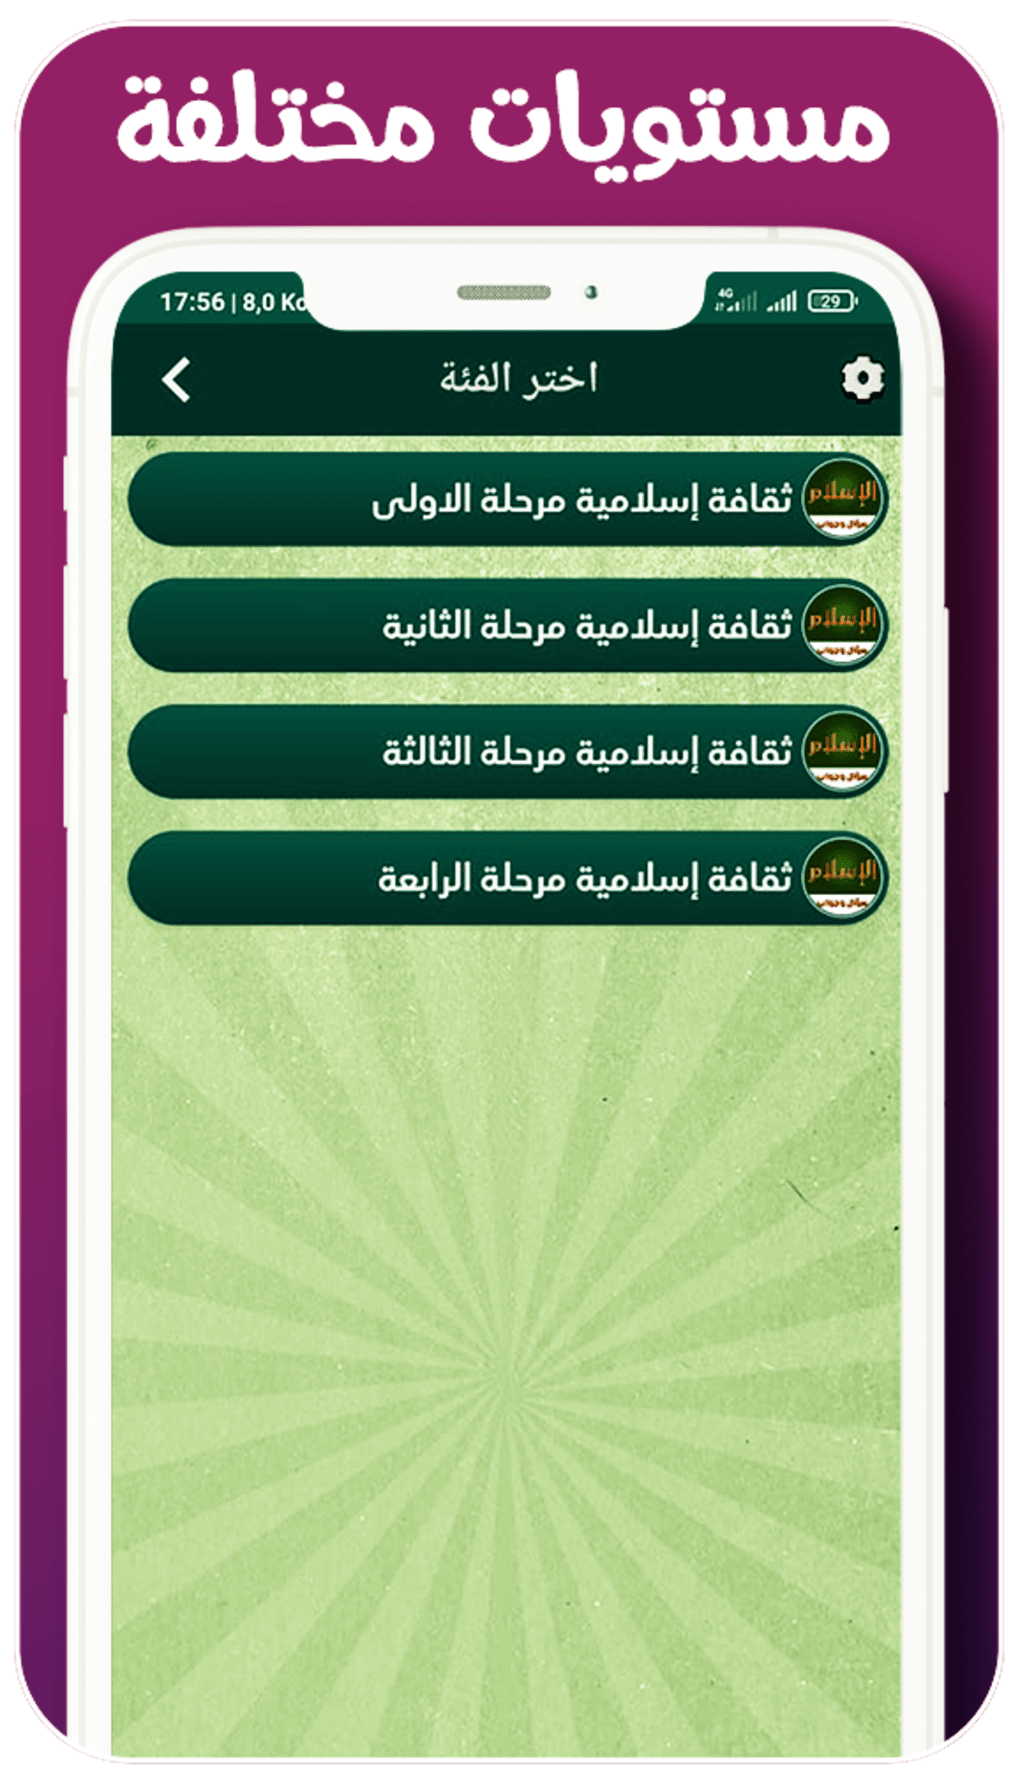 مسابقة اسلامية وأسئلة دينية For Android Download 